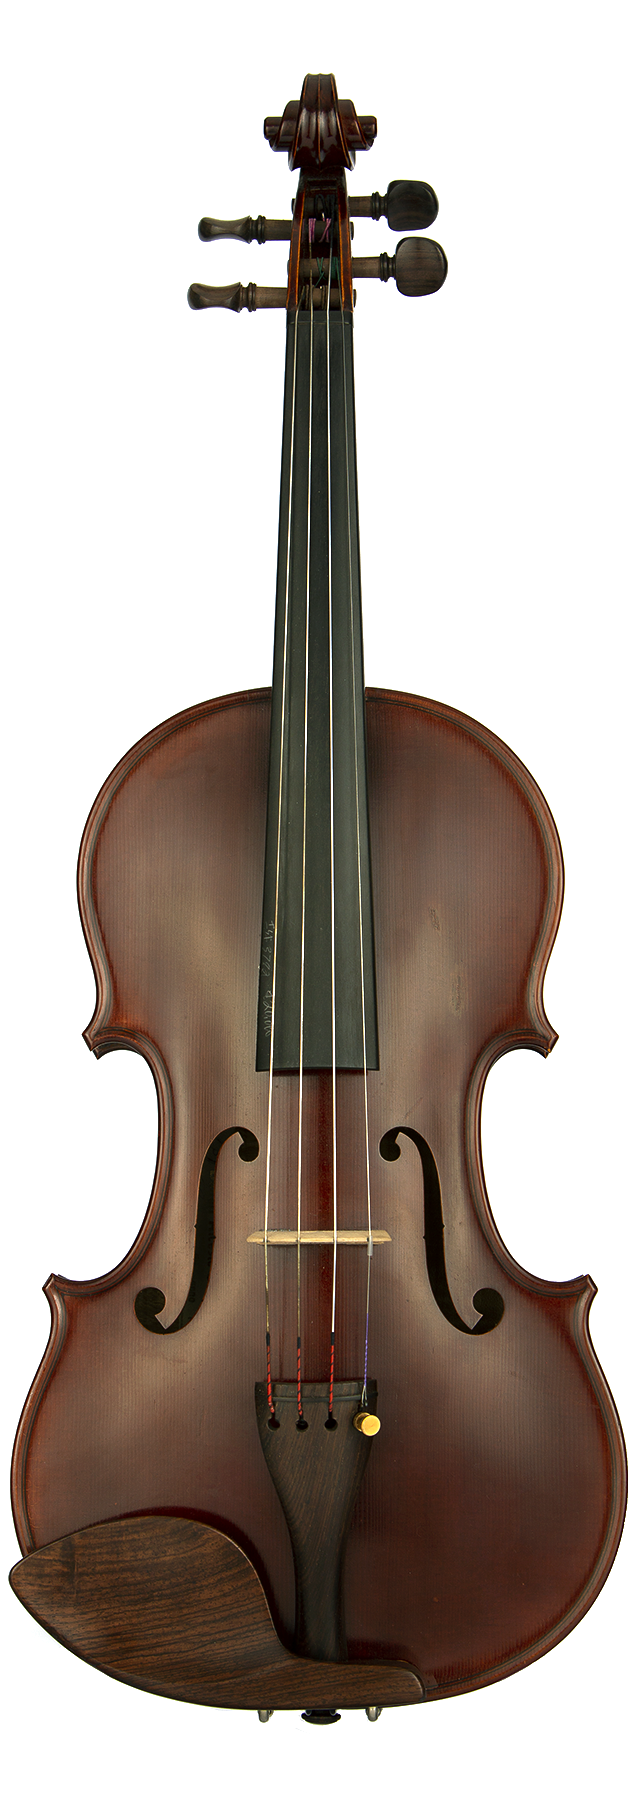 Alceste Bulfari Cremona 1989 Violin